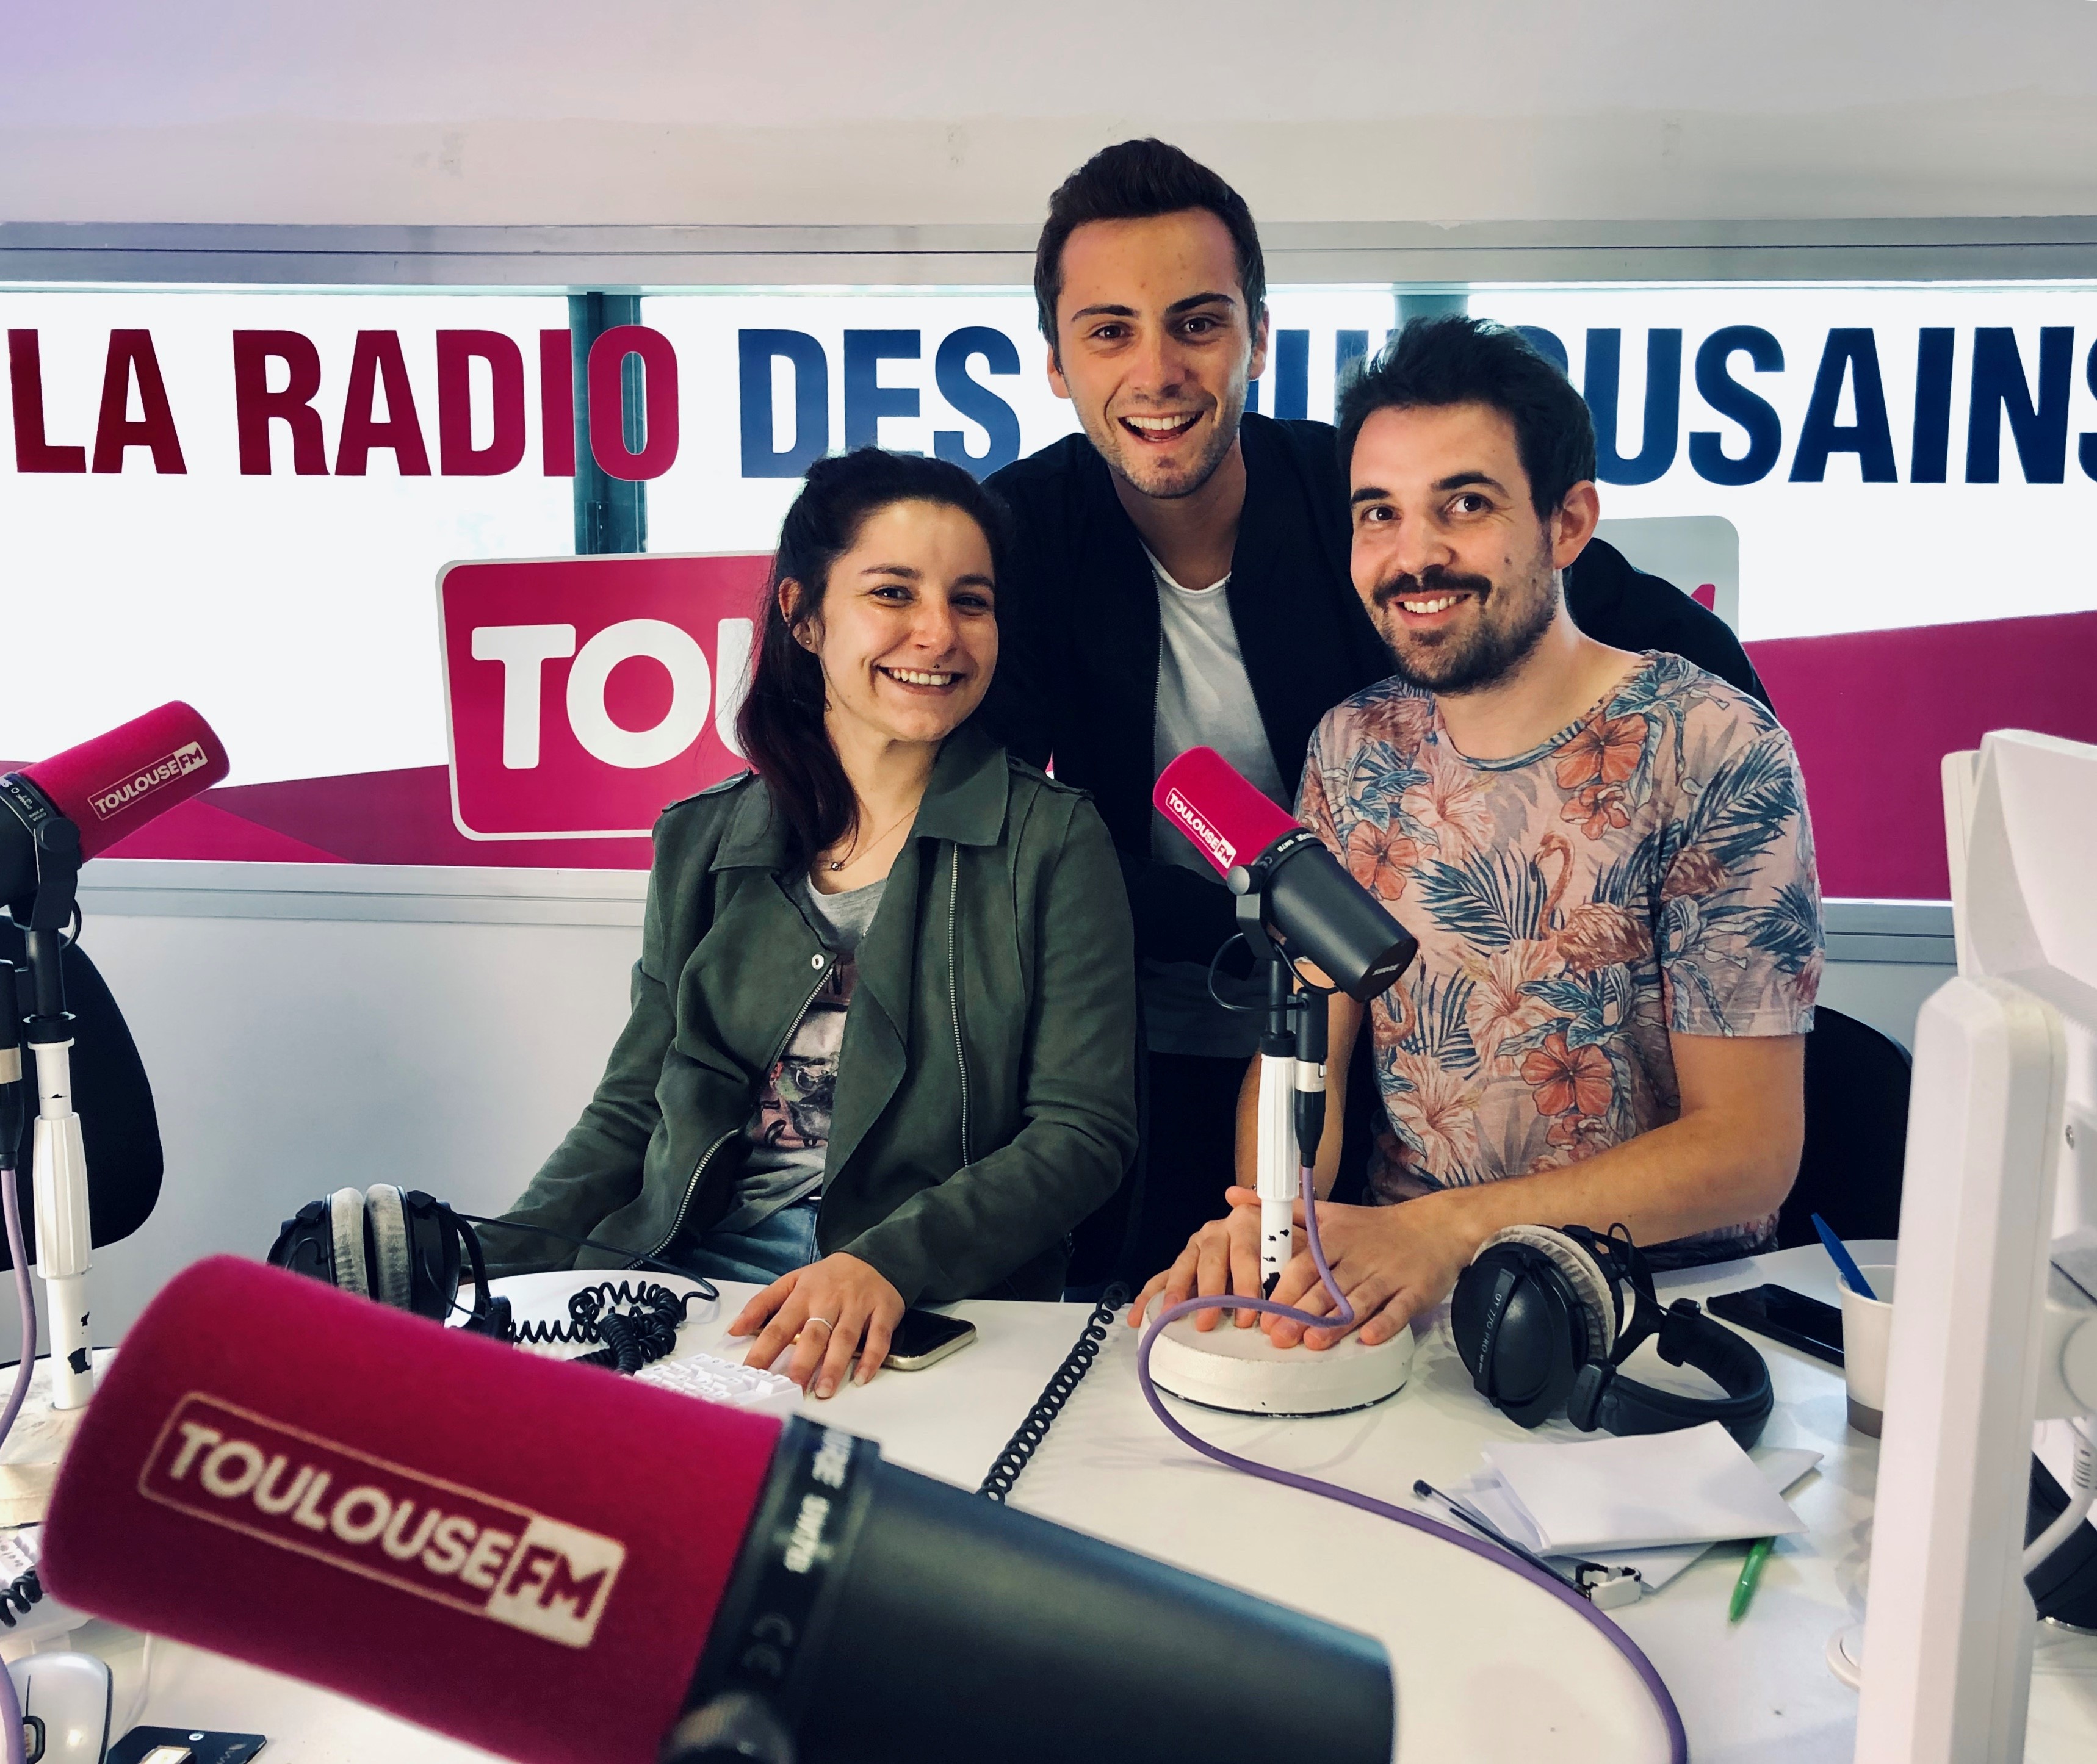 Louis, Nico et Elsa. C’est la "Team du matin" sur Toulouse FM. Un sympathique trio pour réveiller les auditeurs chaque jour.